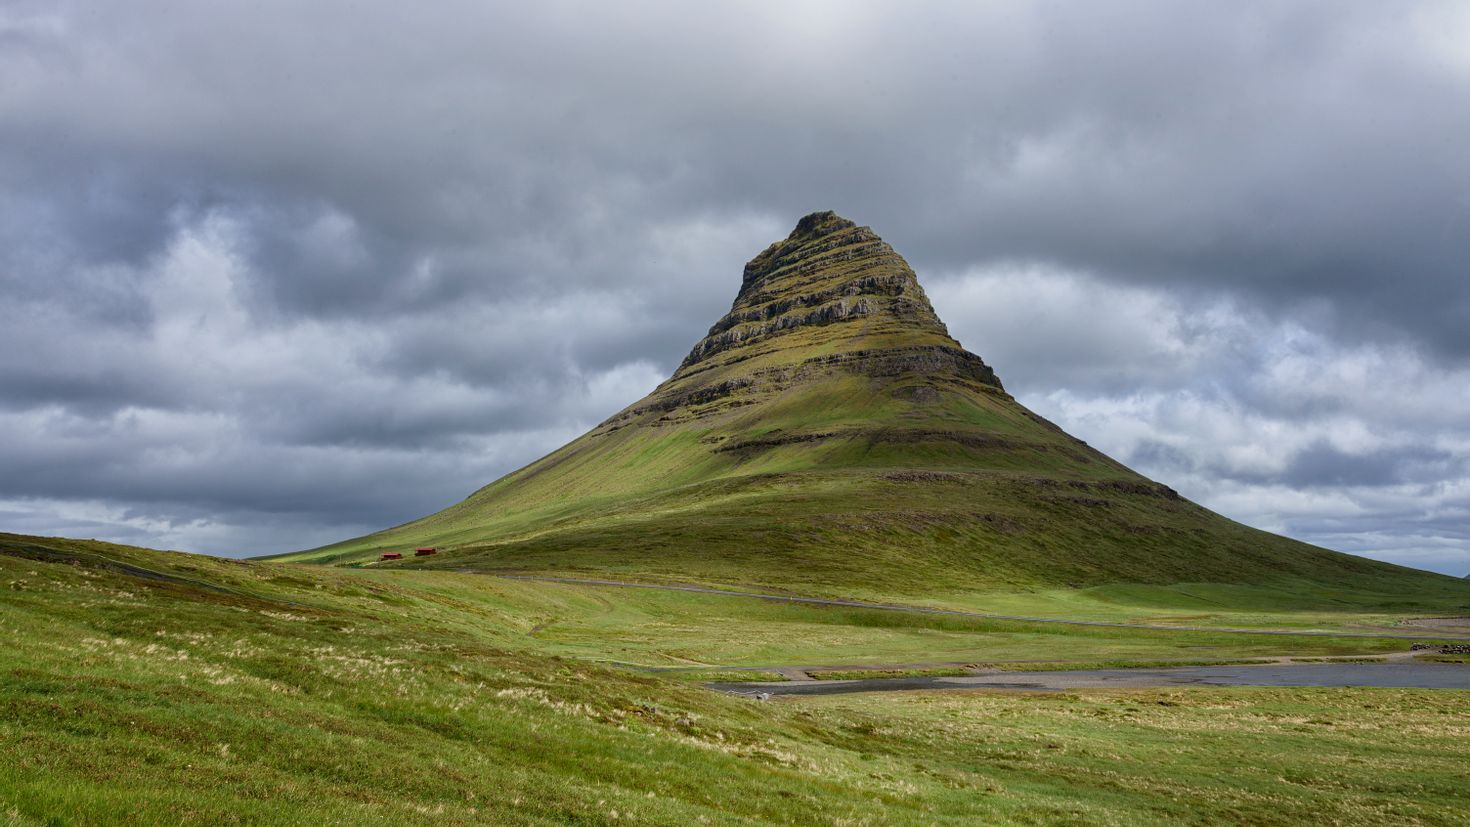 Картинка холма. Исландия холмы. Вершина горы Ейлифур Исландия. Тува Исландия холм. Маленькие горы.